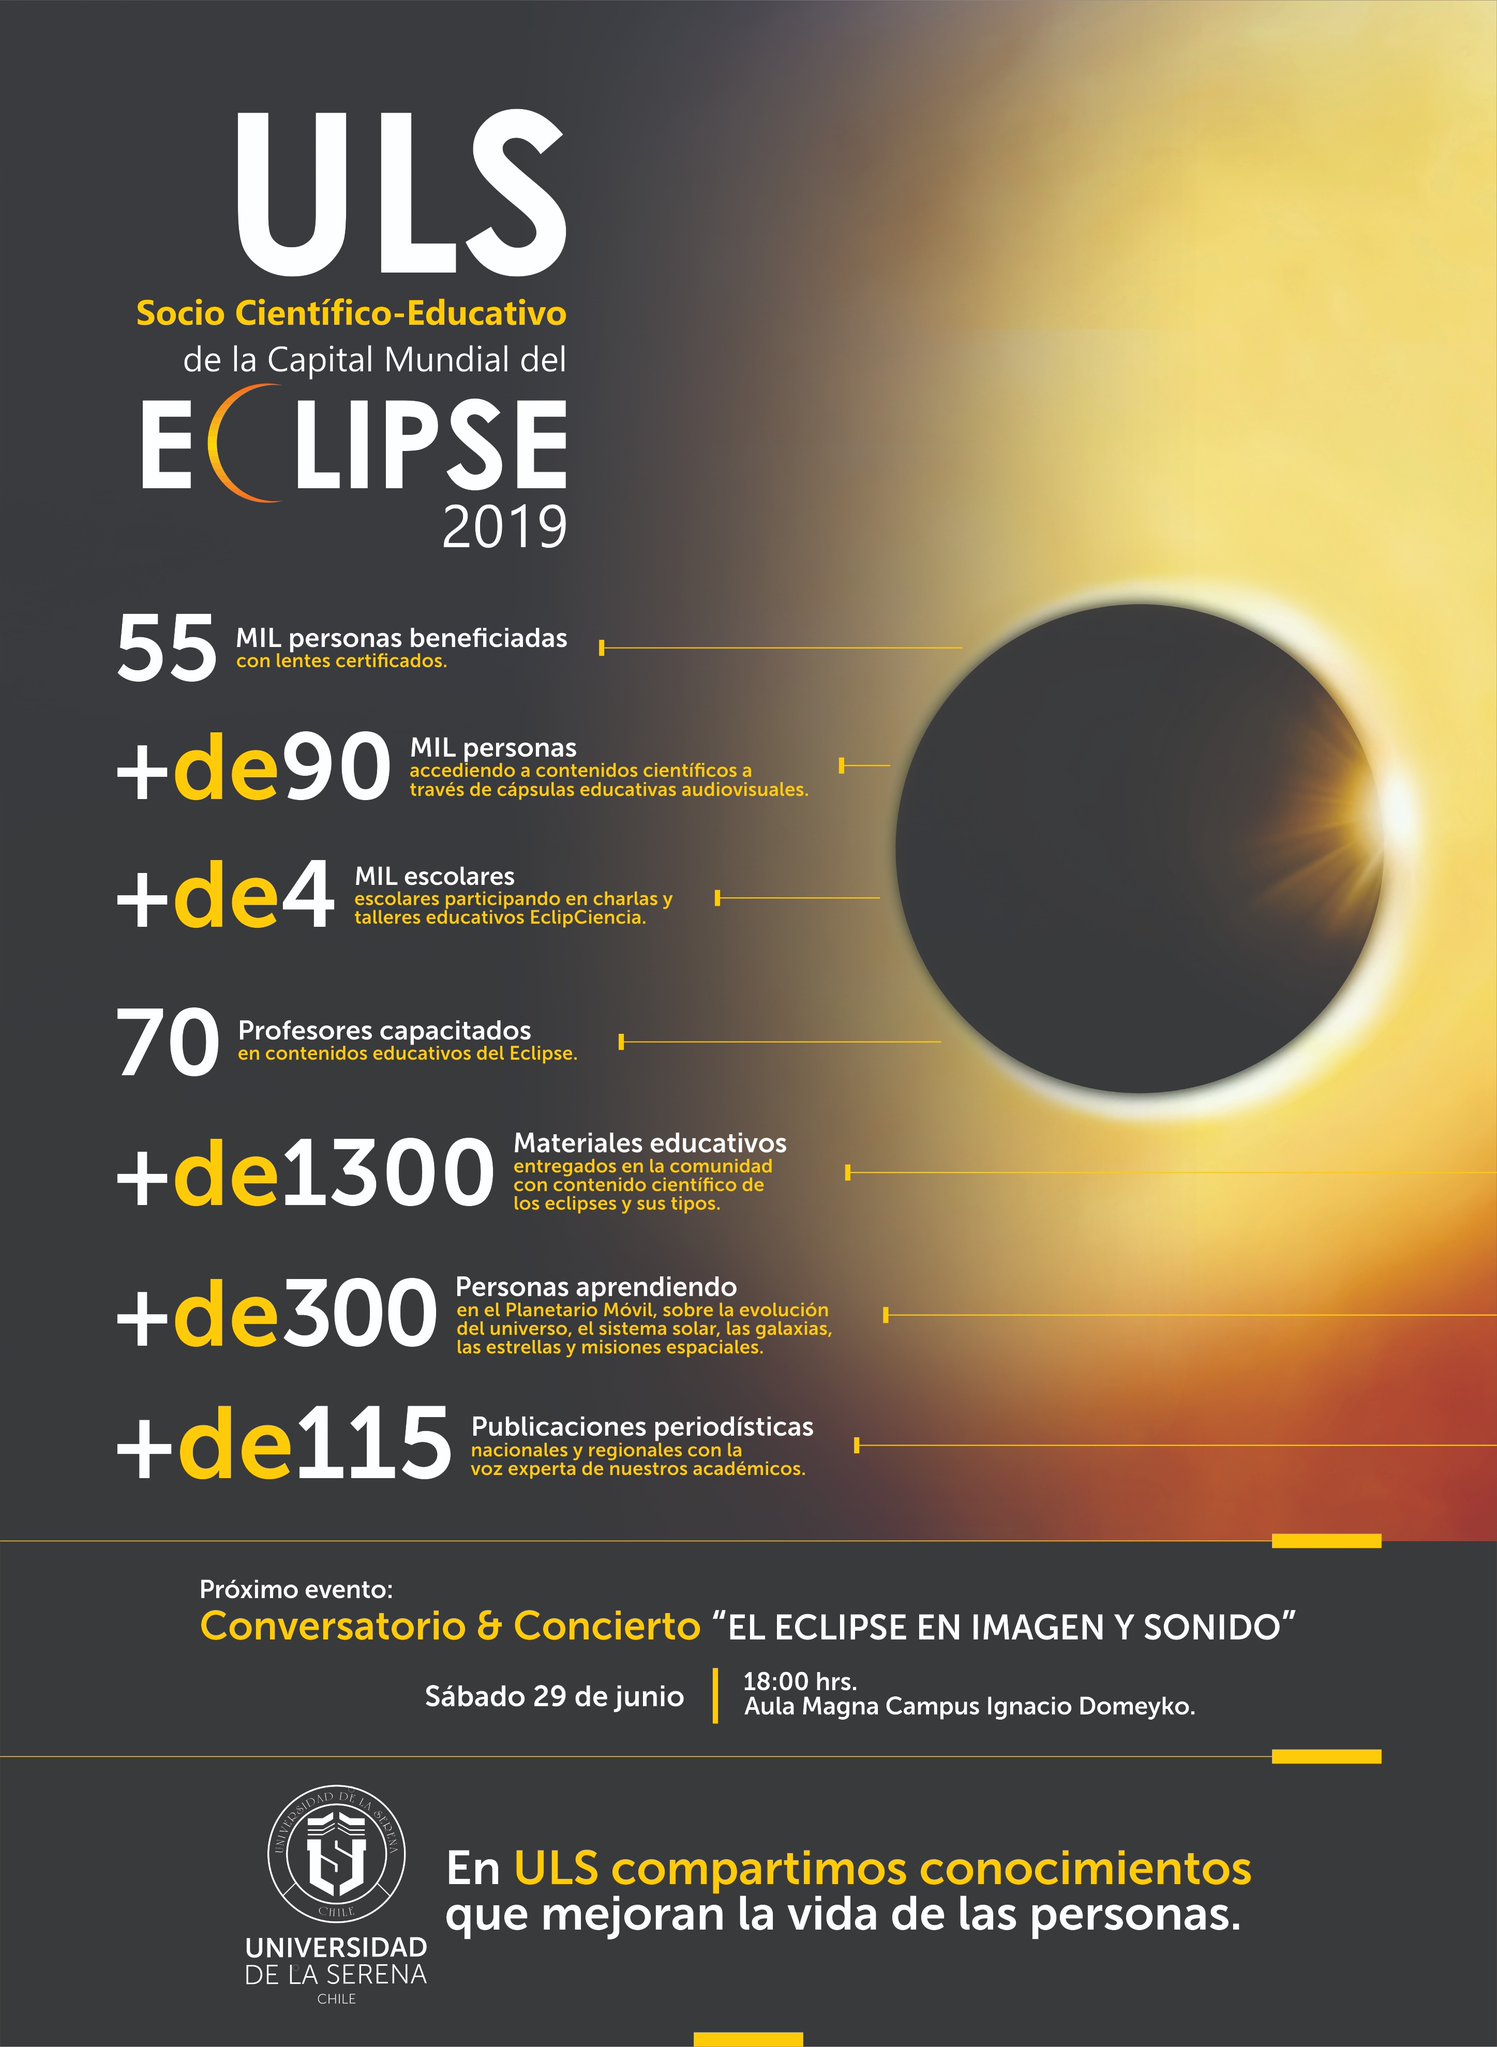 ULS Socio Científico-Educativo de la Capital Mundial del #Eclipse2019